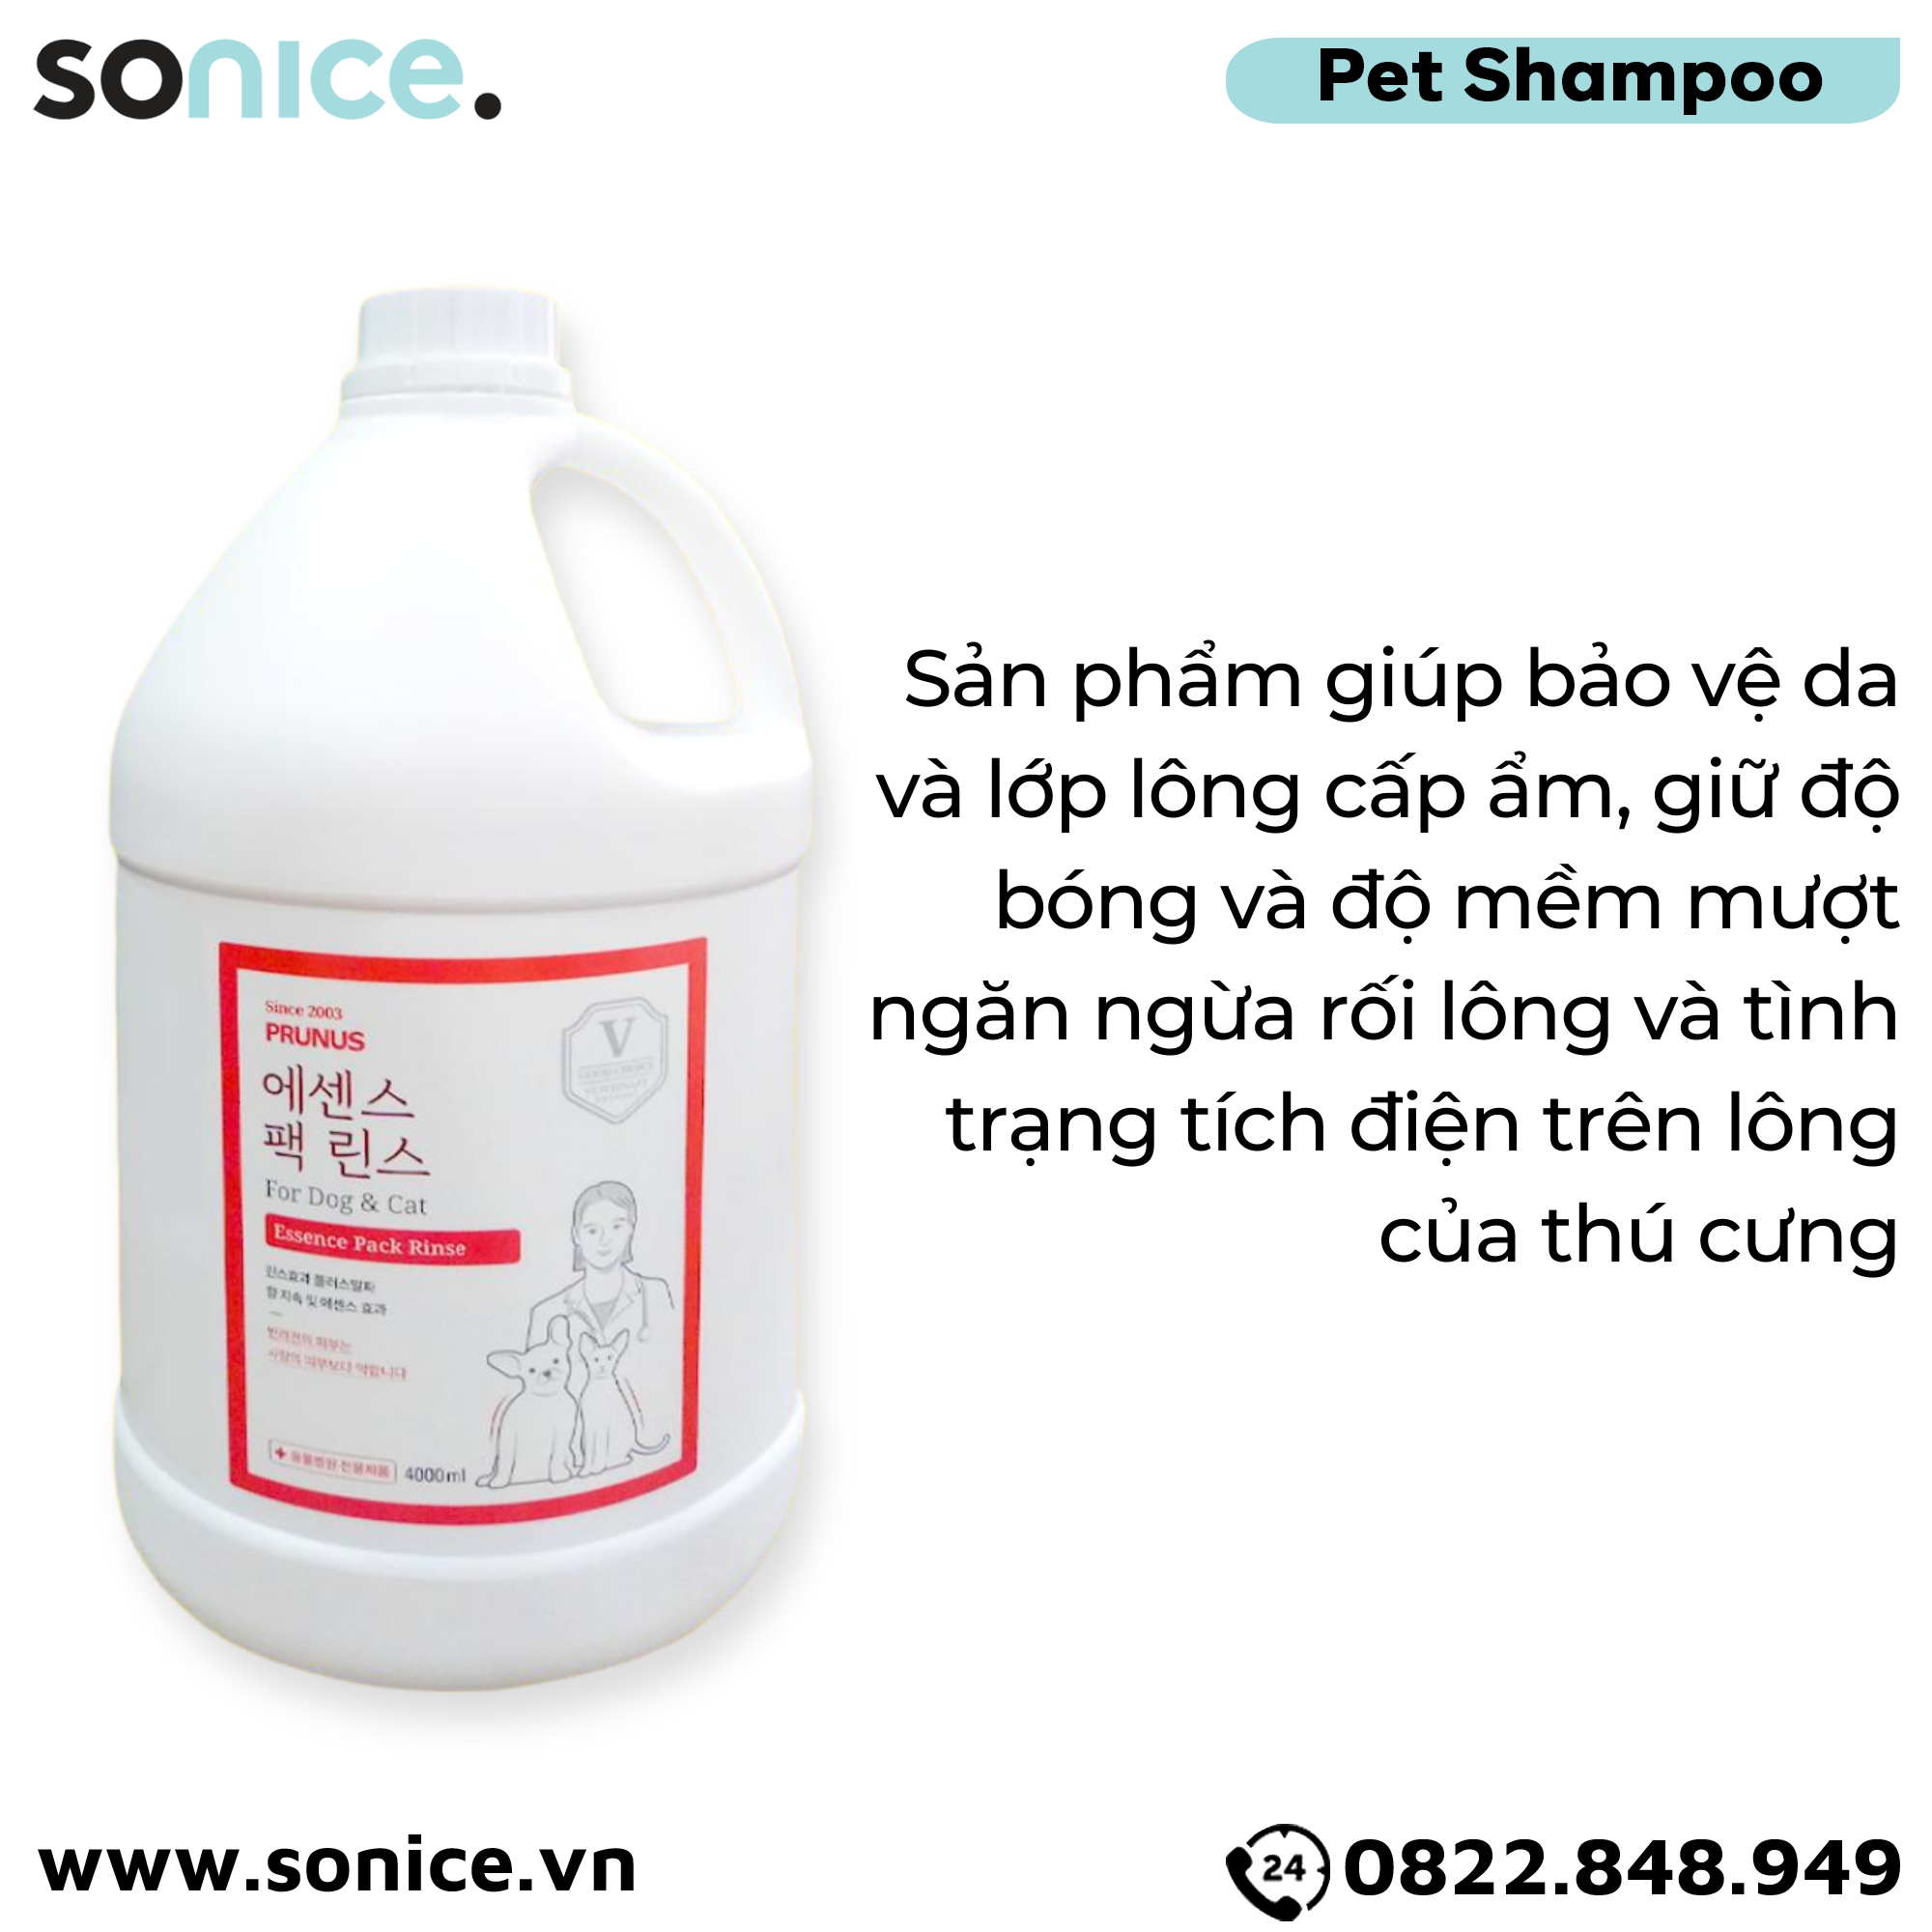  Dầu xả Prunus Essence Pack Rinse 4L - Làm mềm mượt lông cho chó mèo SONICE. 